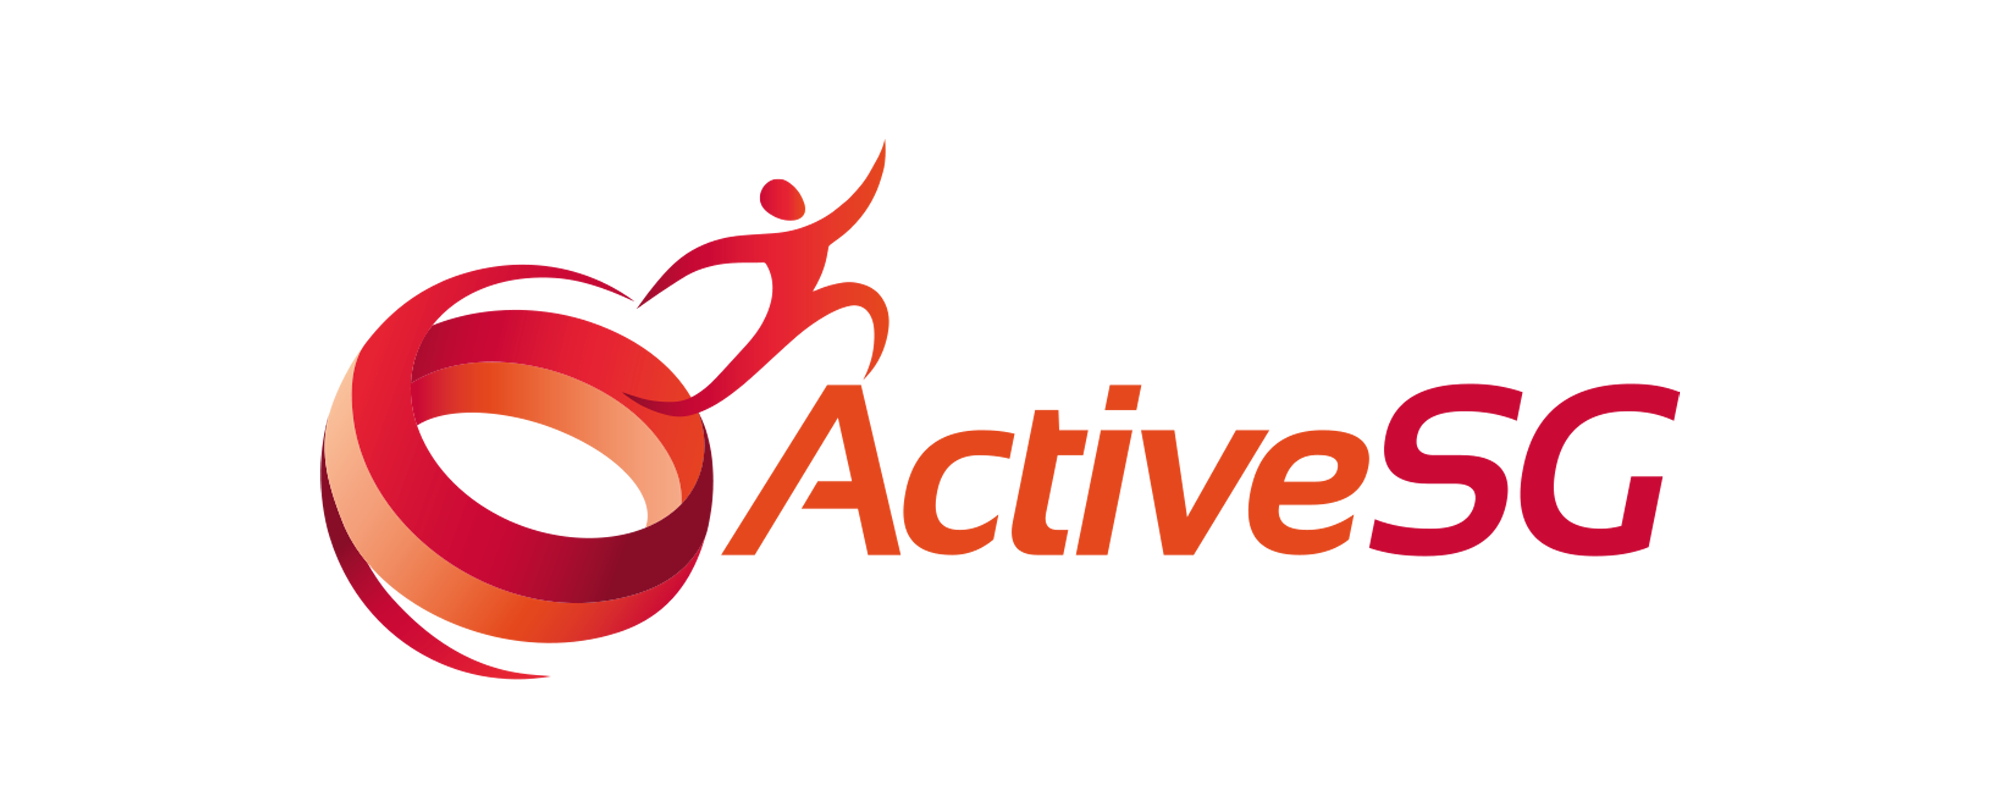 ActiveSG